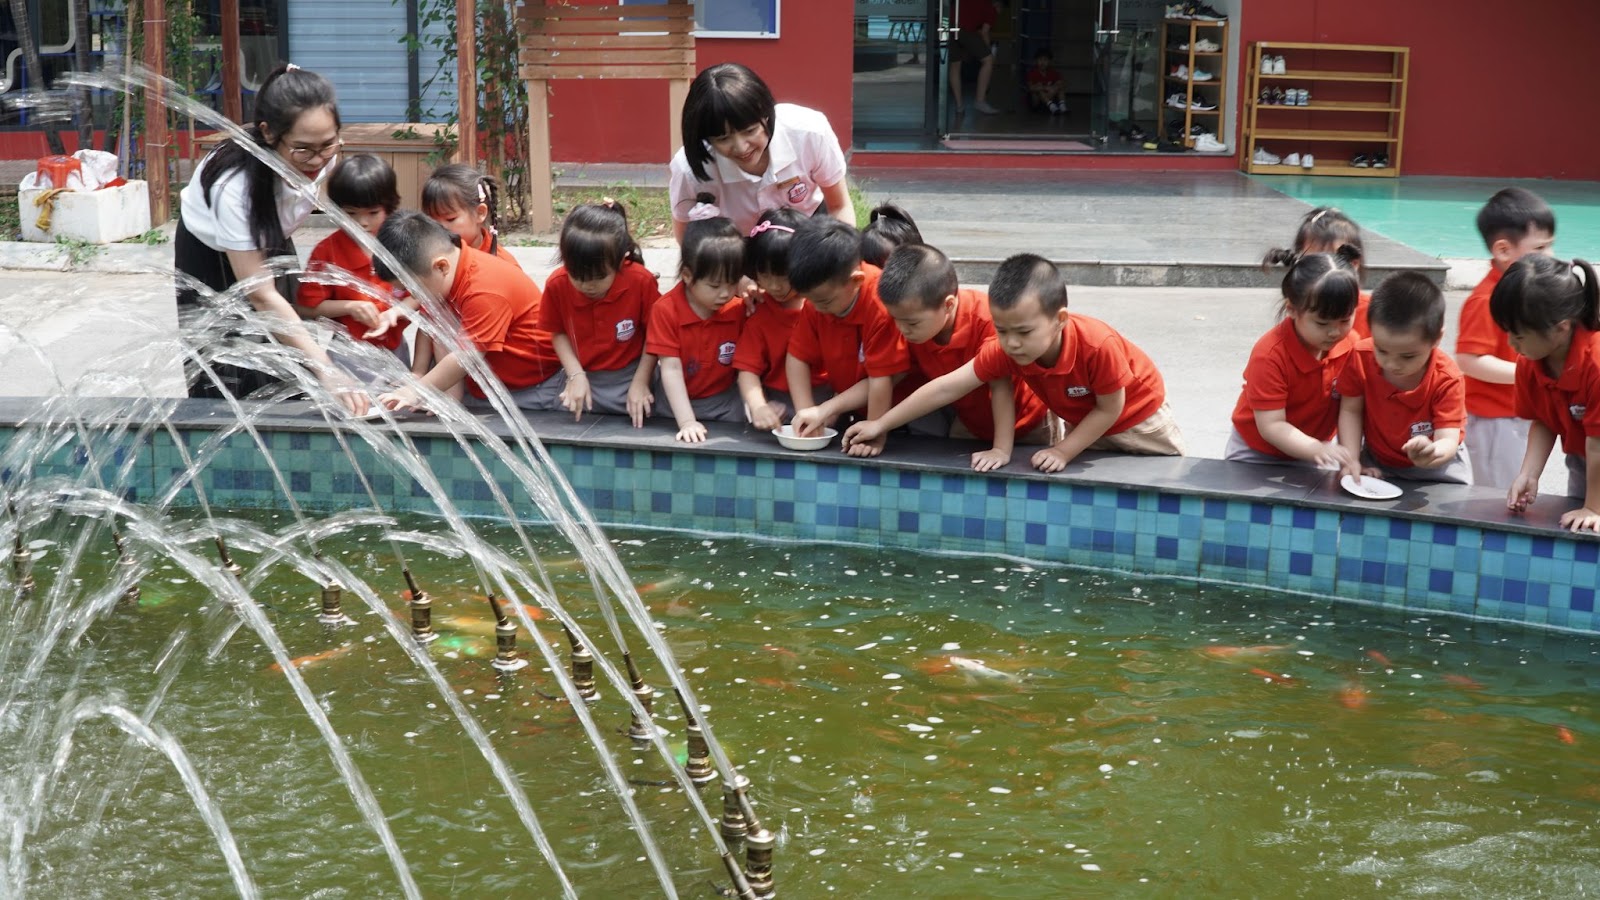 Phát triển ngôn ngữ cho trẻ sau dịch Covid-19 tại Hanoi Academy